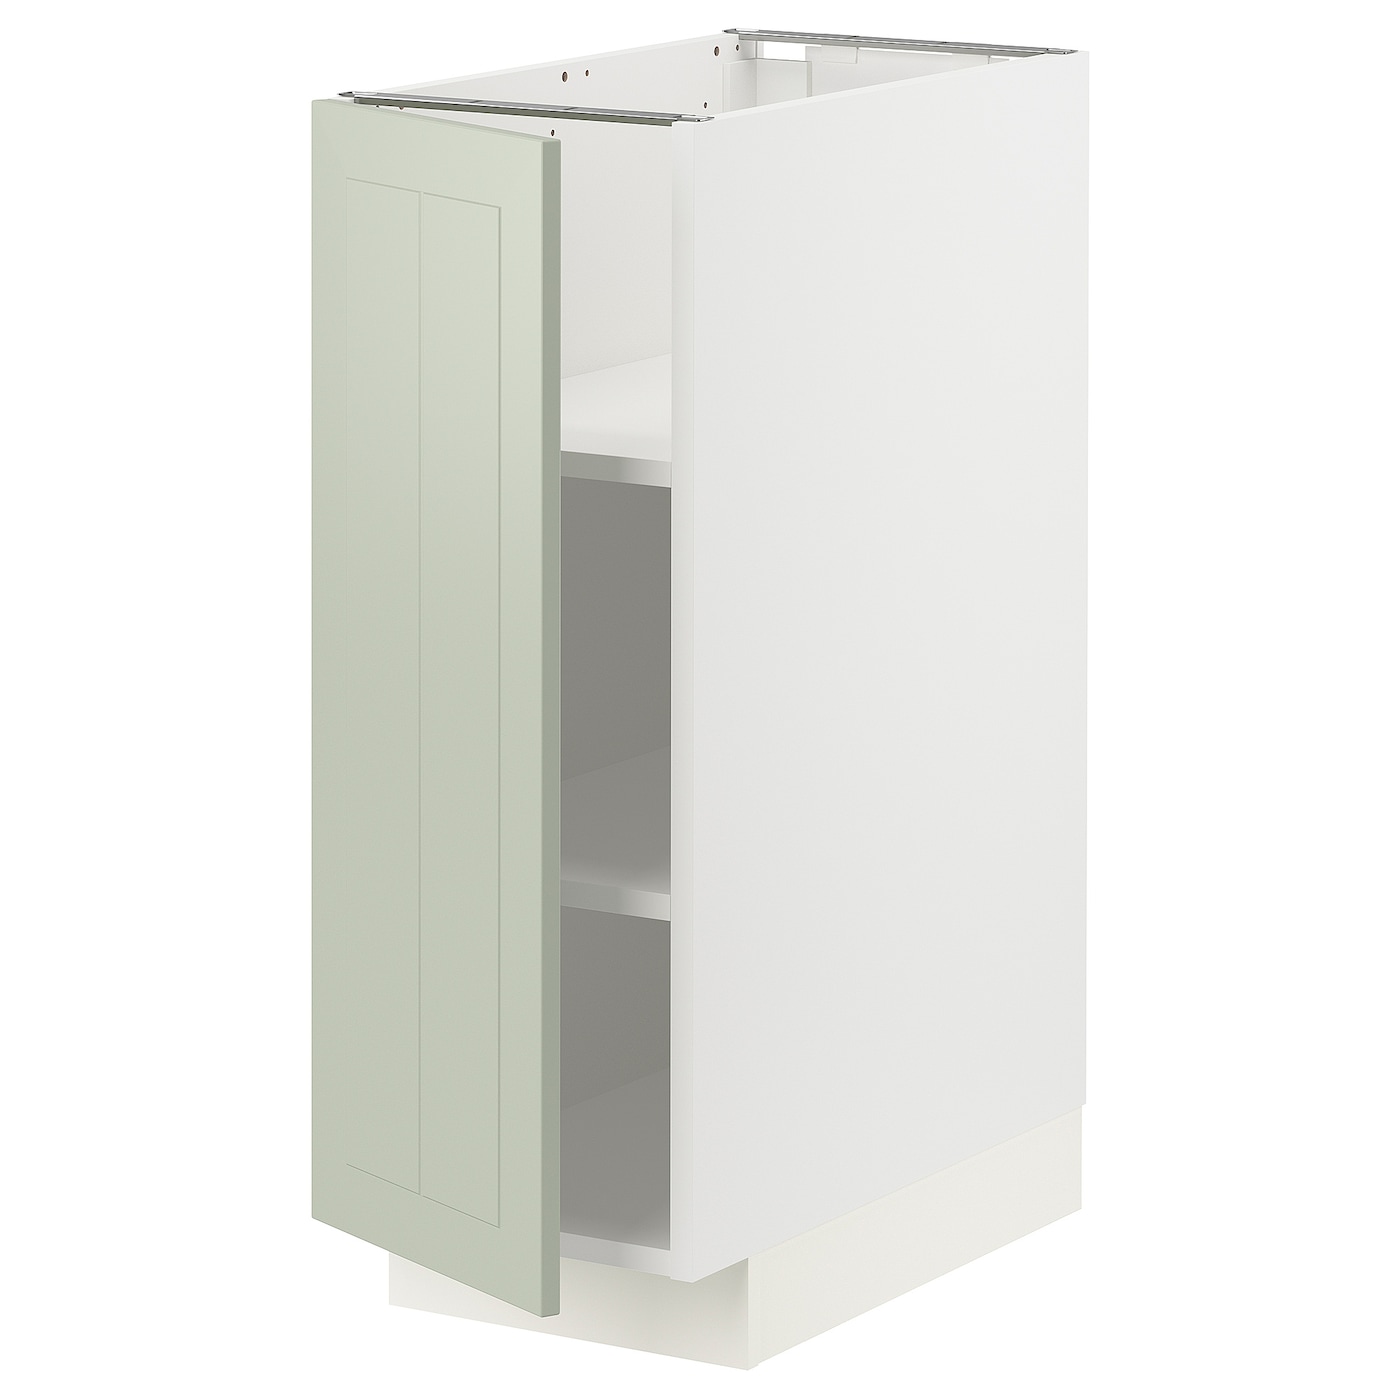 Напольный кухонный шкаф  - IKEA METOD, 88x62x30см, белый/светло-зеленый, МЕТОД ИКЕА